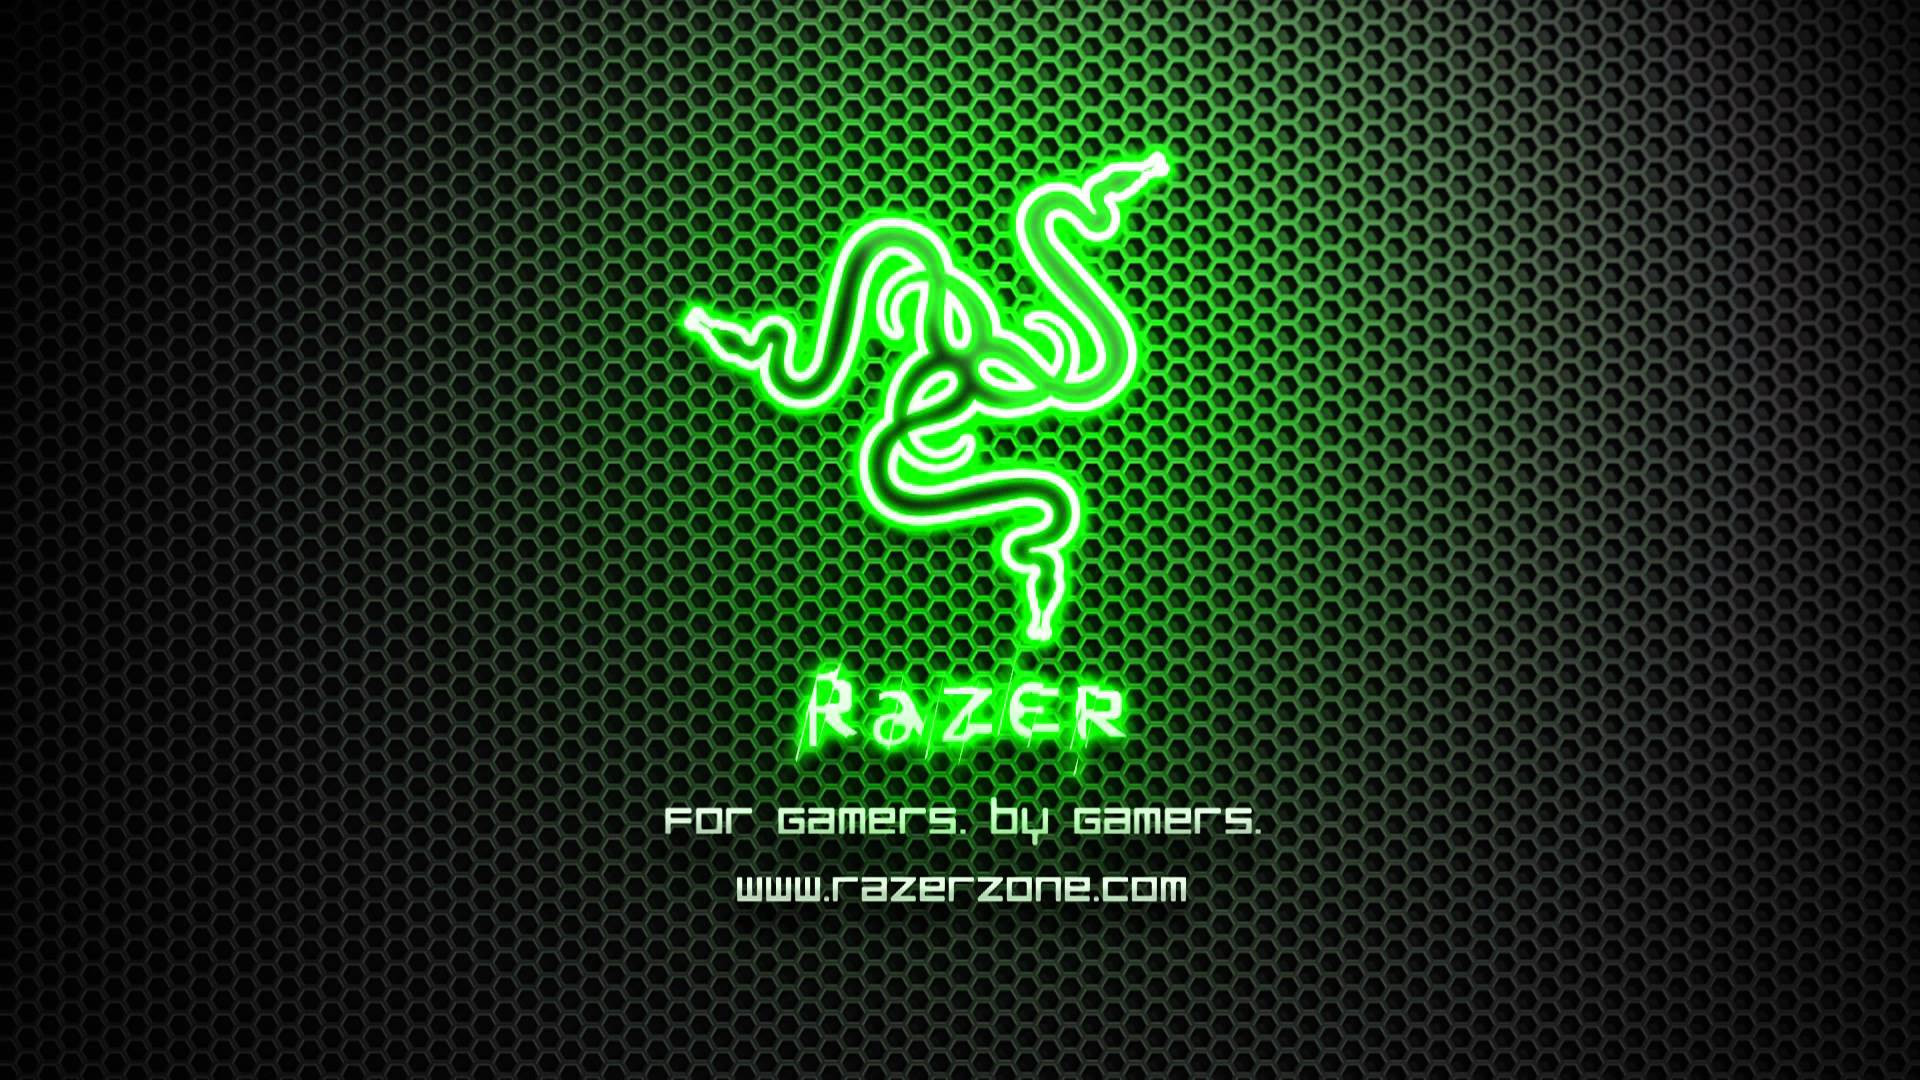 1920x1080 Razer Animated Wallpaper Elegant Razer Dreamscene